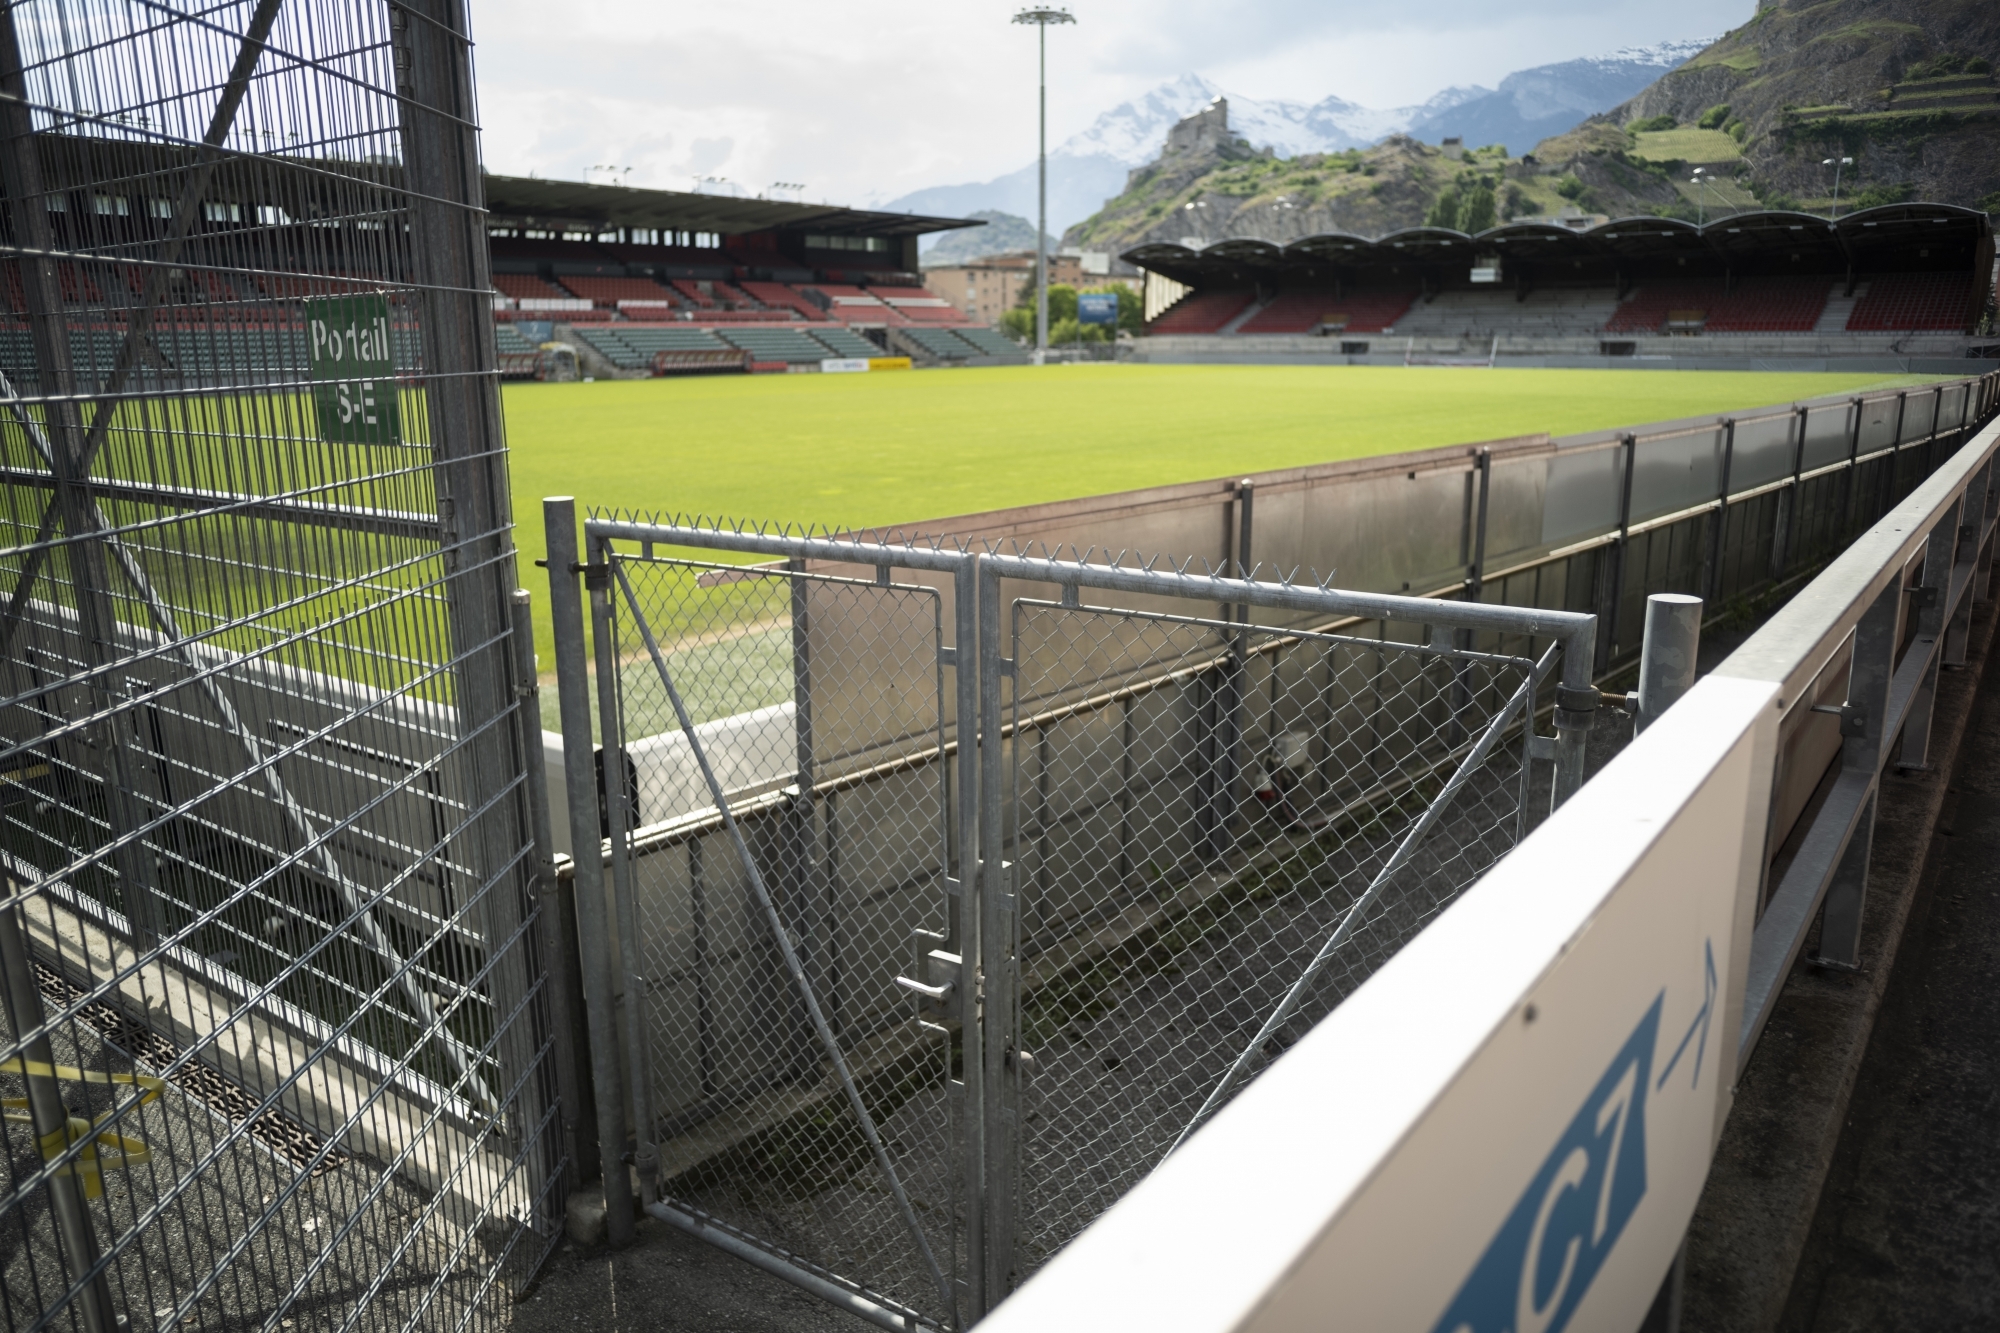 Le stade de Tourbillon accueillera-t-il le derby entre Sion et Lausanne dimanche? Réponse dans les prochaines heures...